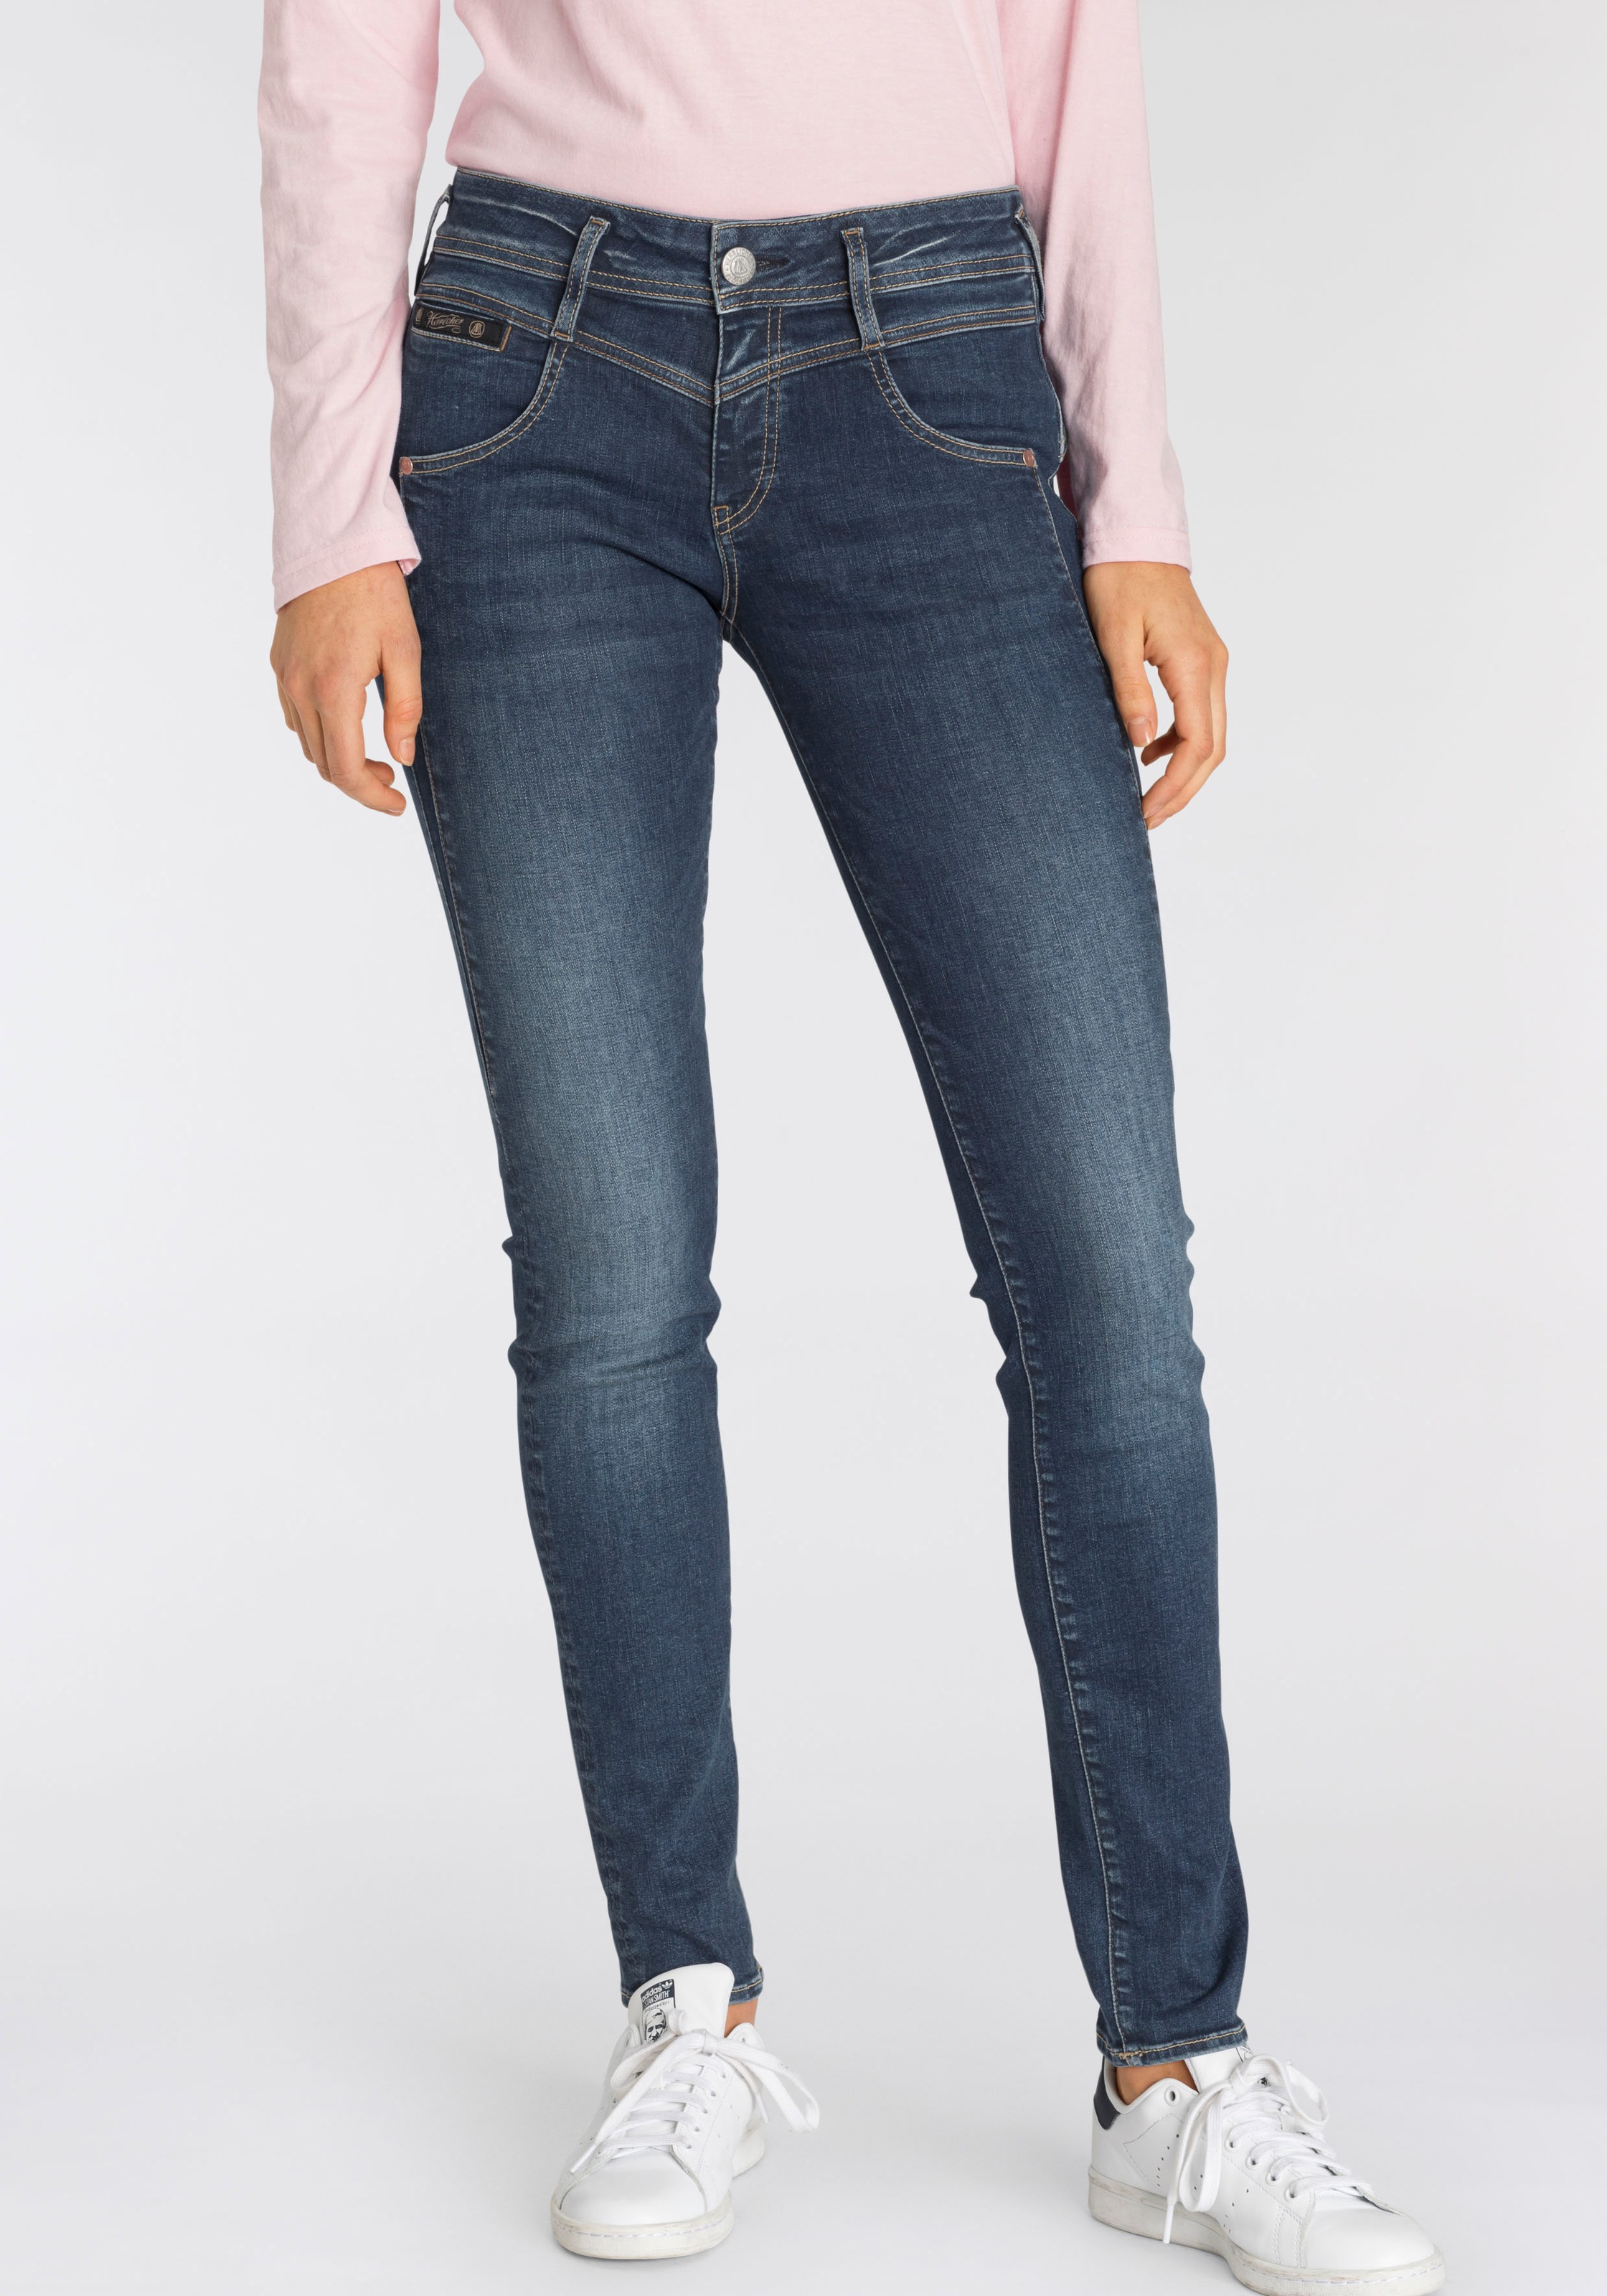 Herrlicher Slim-fit-Jeans »COSY Online Shop Keileinsatz durch Shaping-Wirkung kaufen im SLIM«, OTTO eingearbeiteten